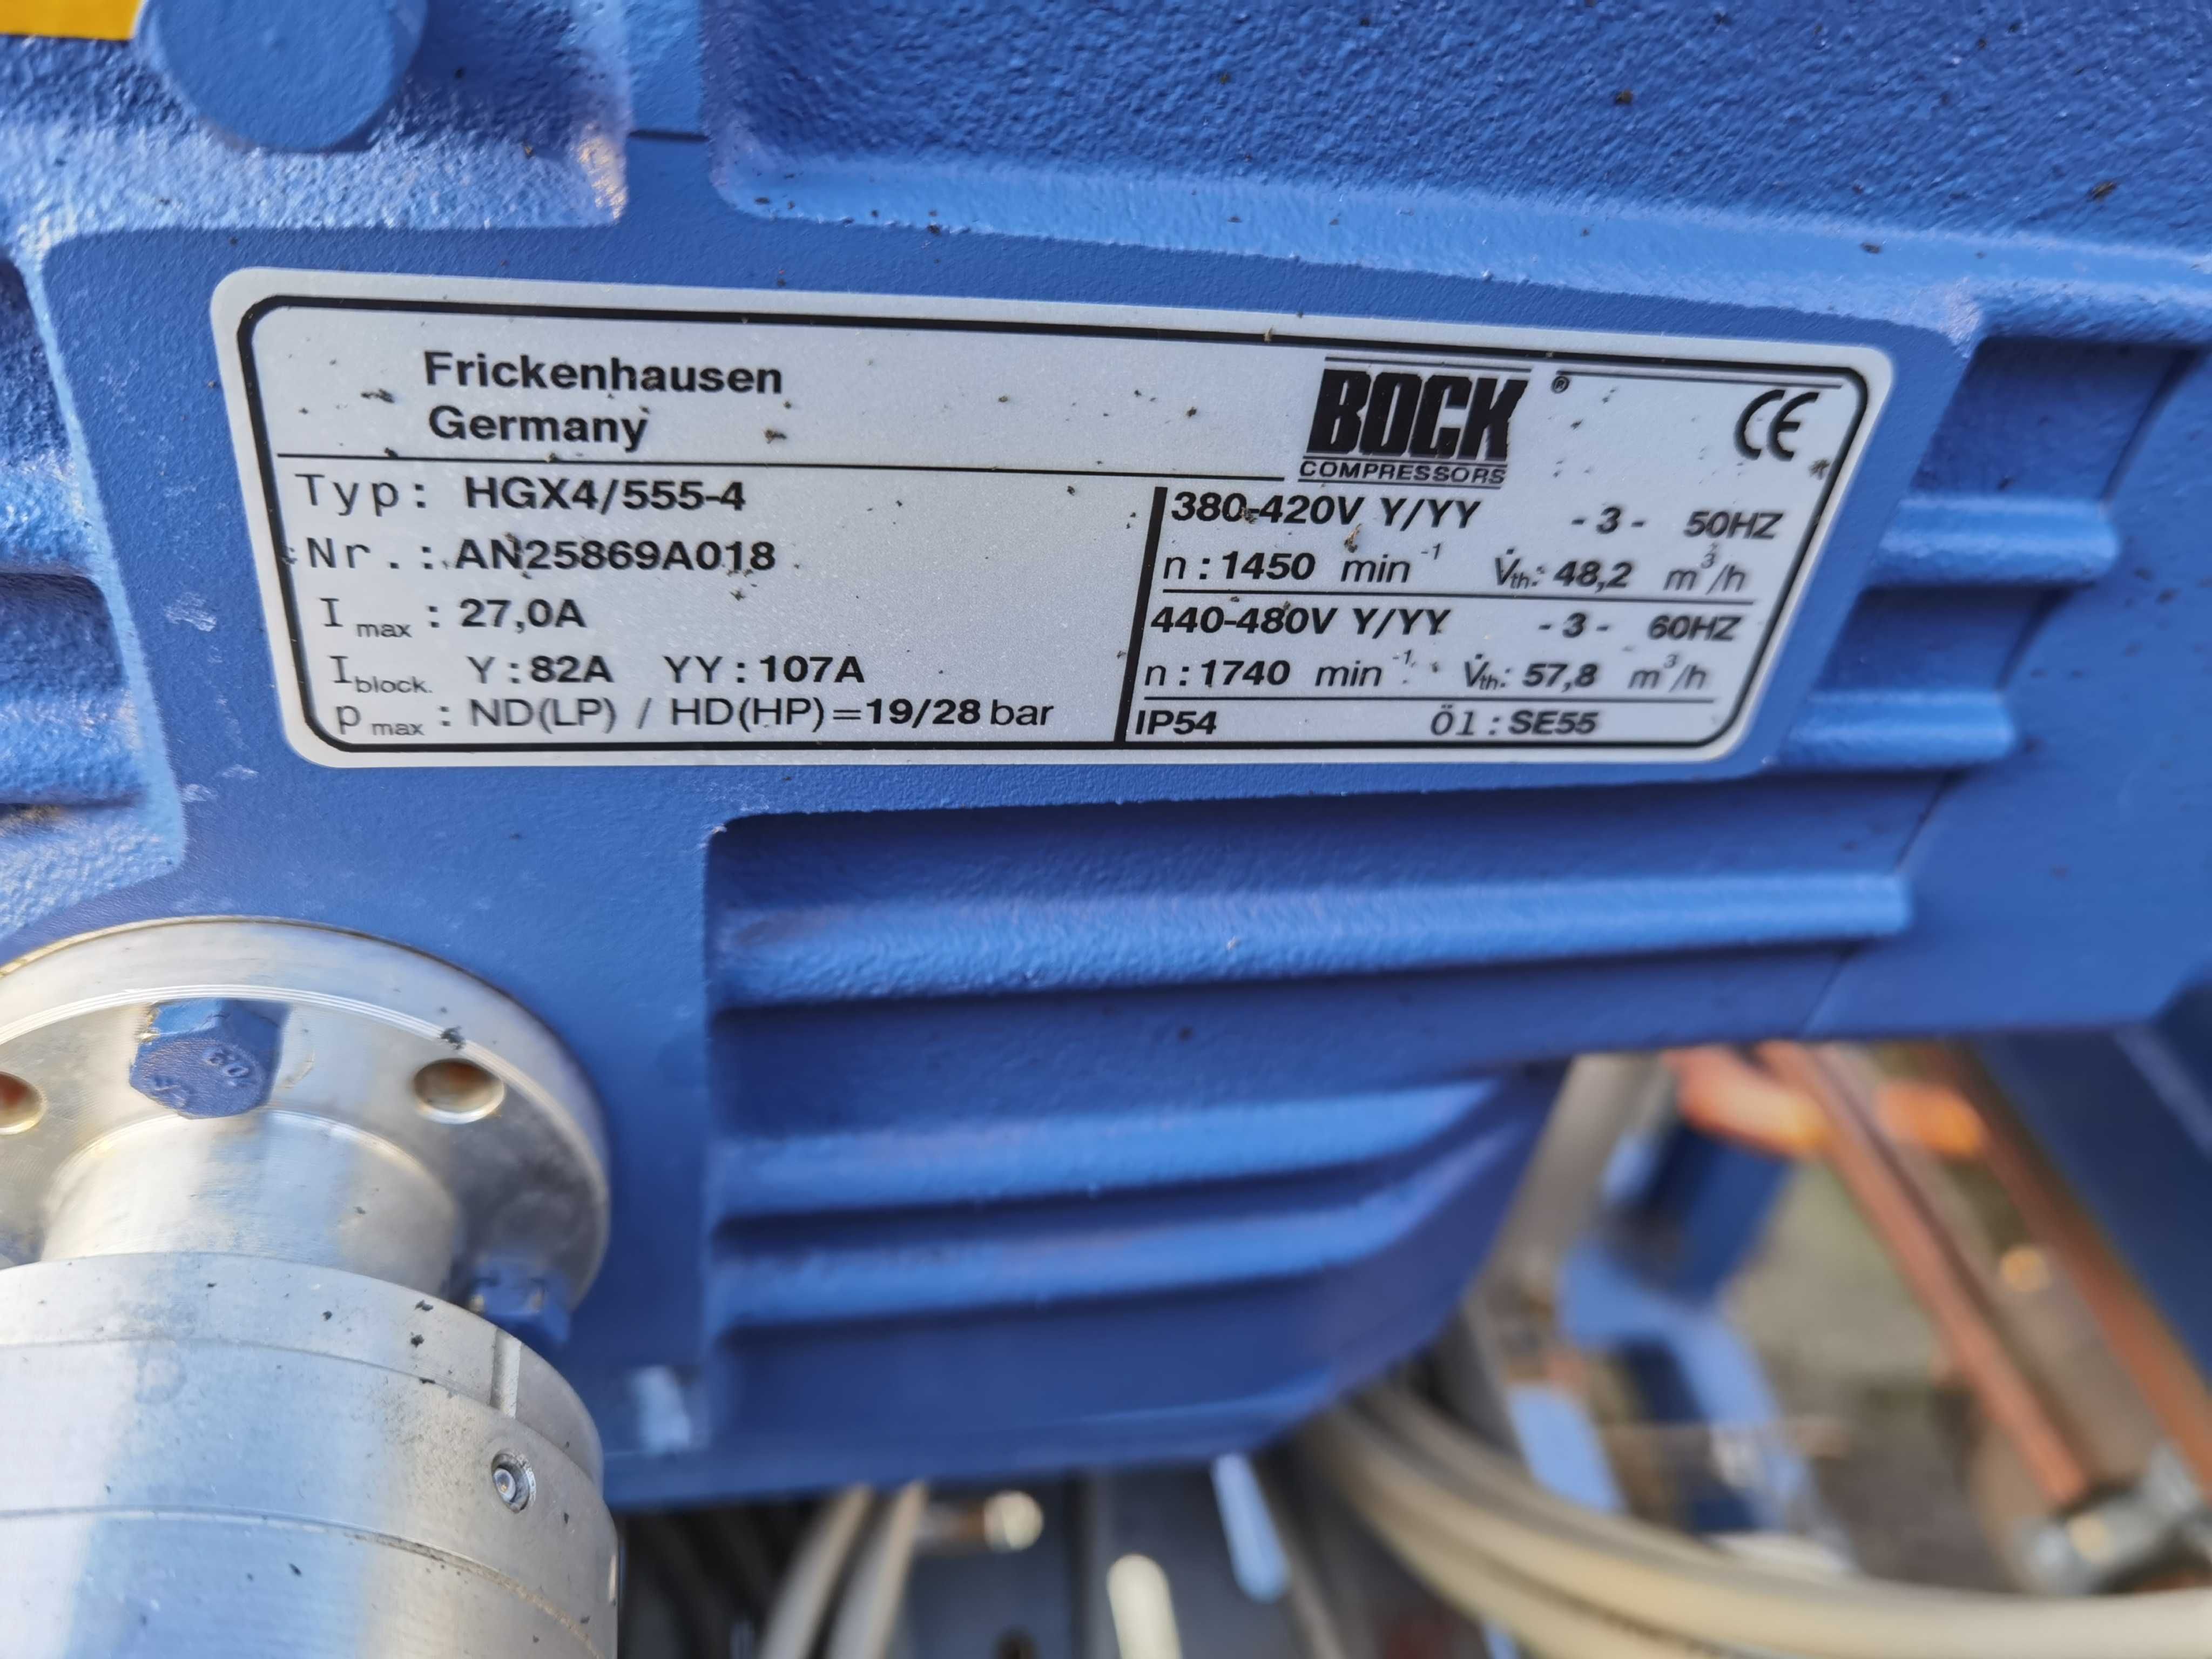 Sprężarka agregat compressor BOCK HGX4/555-4  48m3/h